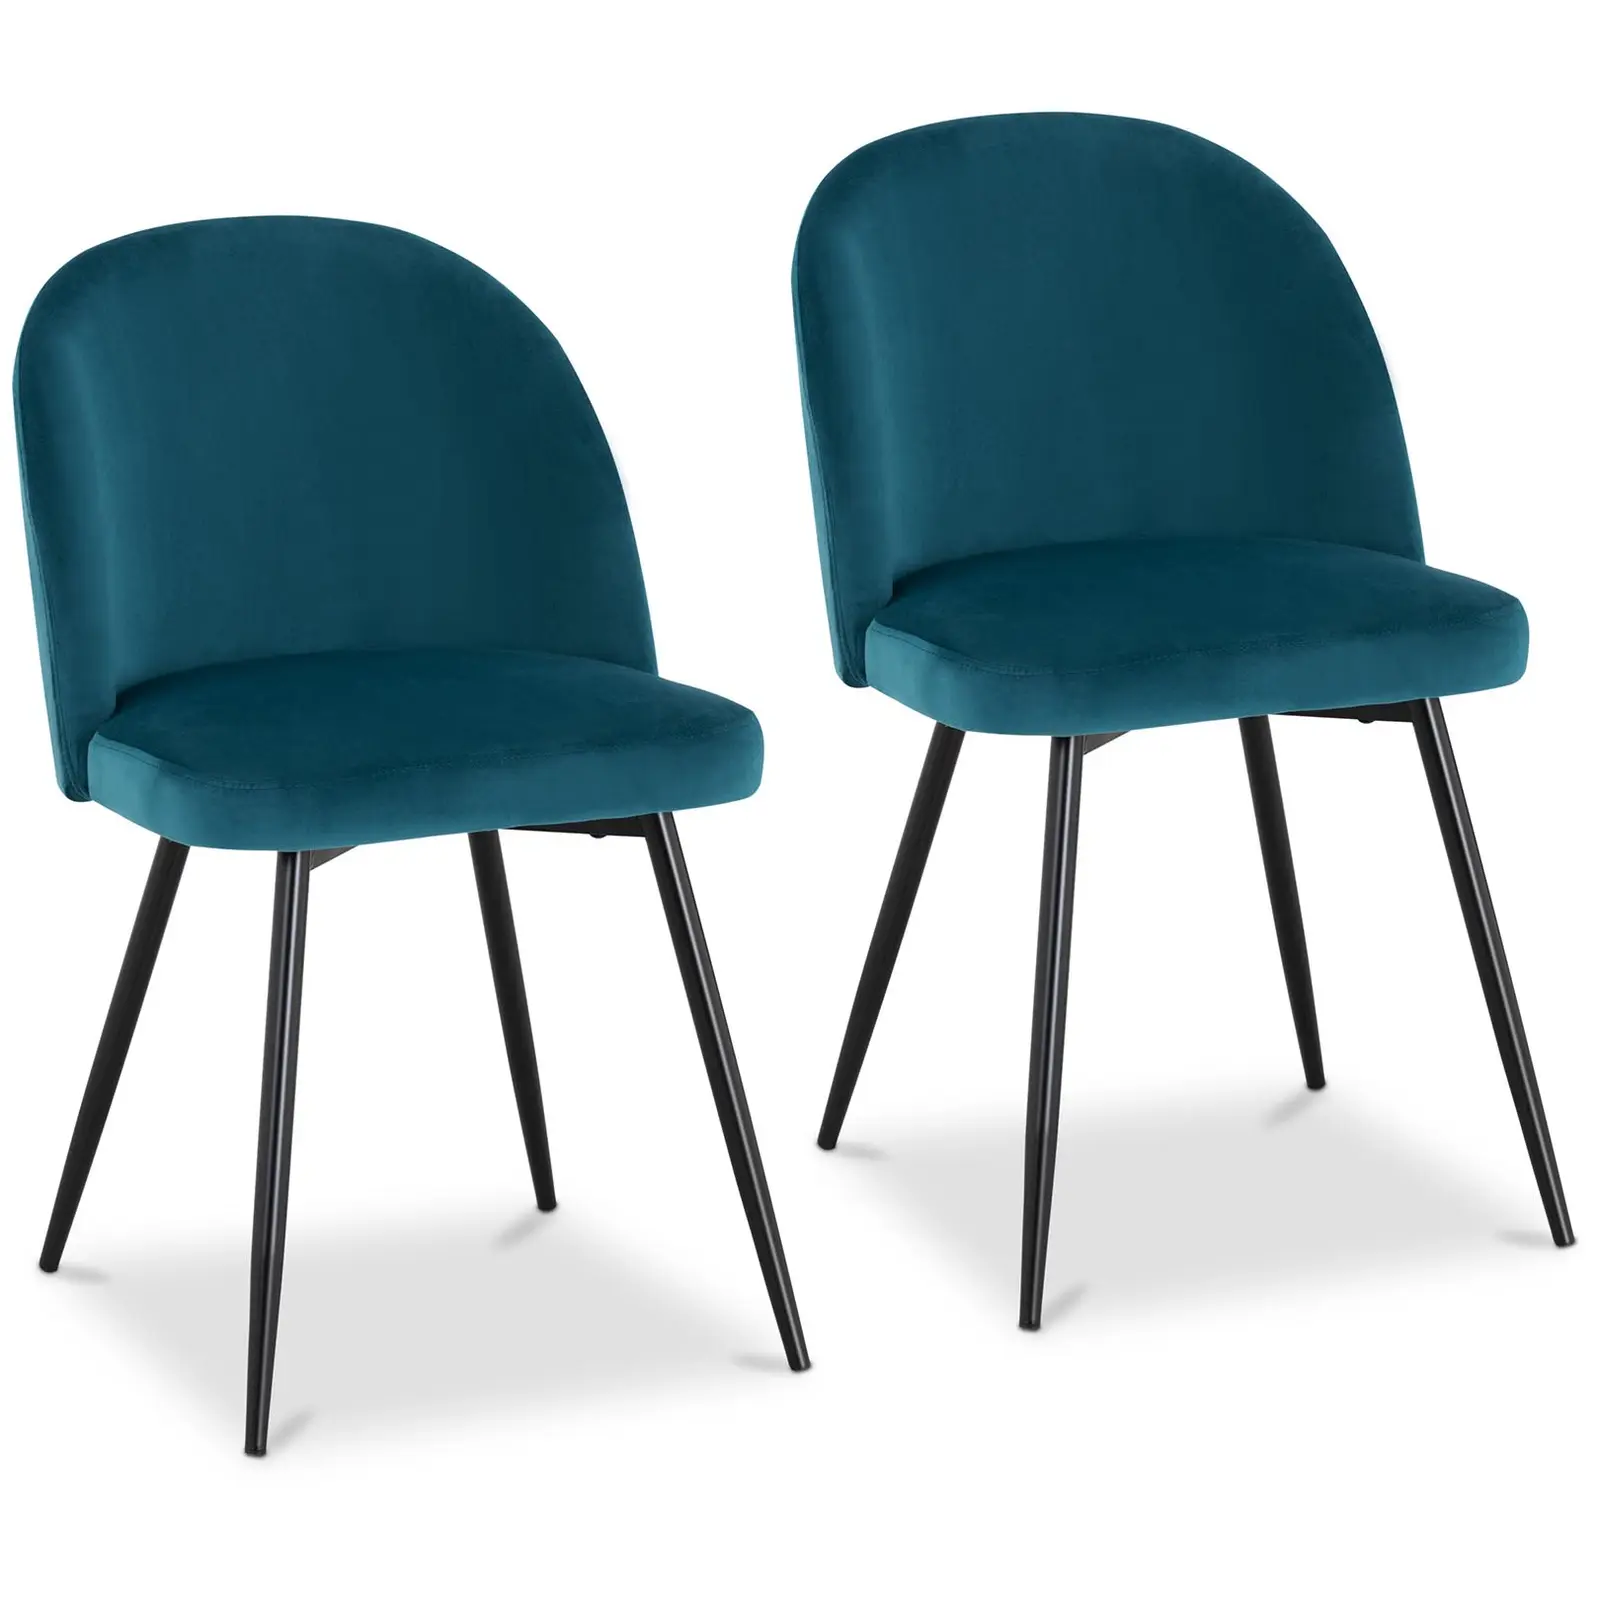 Čalouněná židle sada 2 kusů do 150 kg sedací plocha 48 x 41,5 cm černá - Čalouněné židle Fromm & Starck